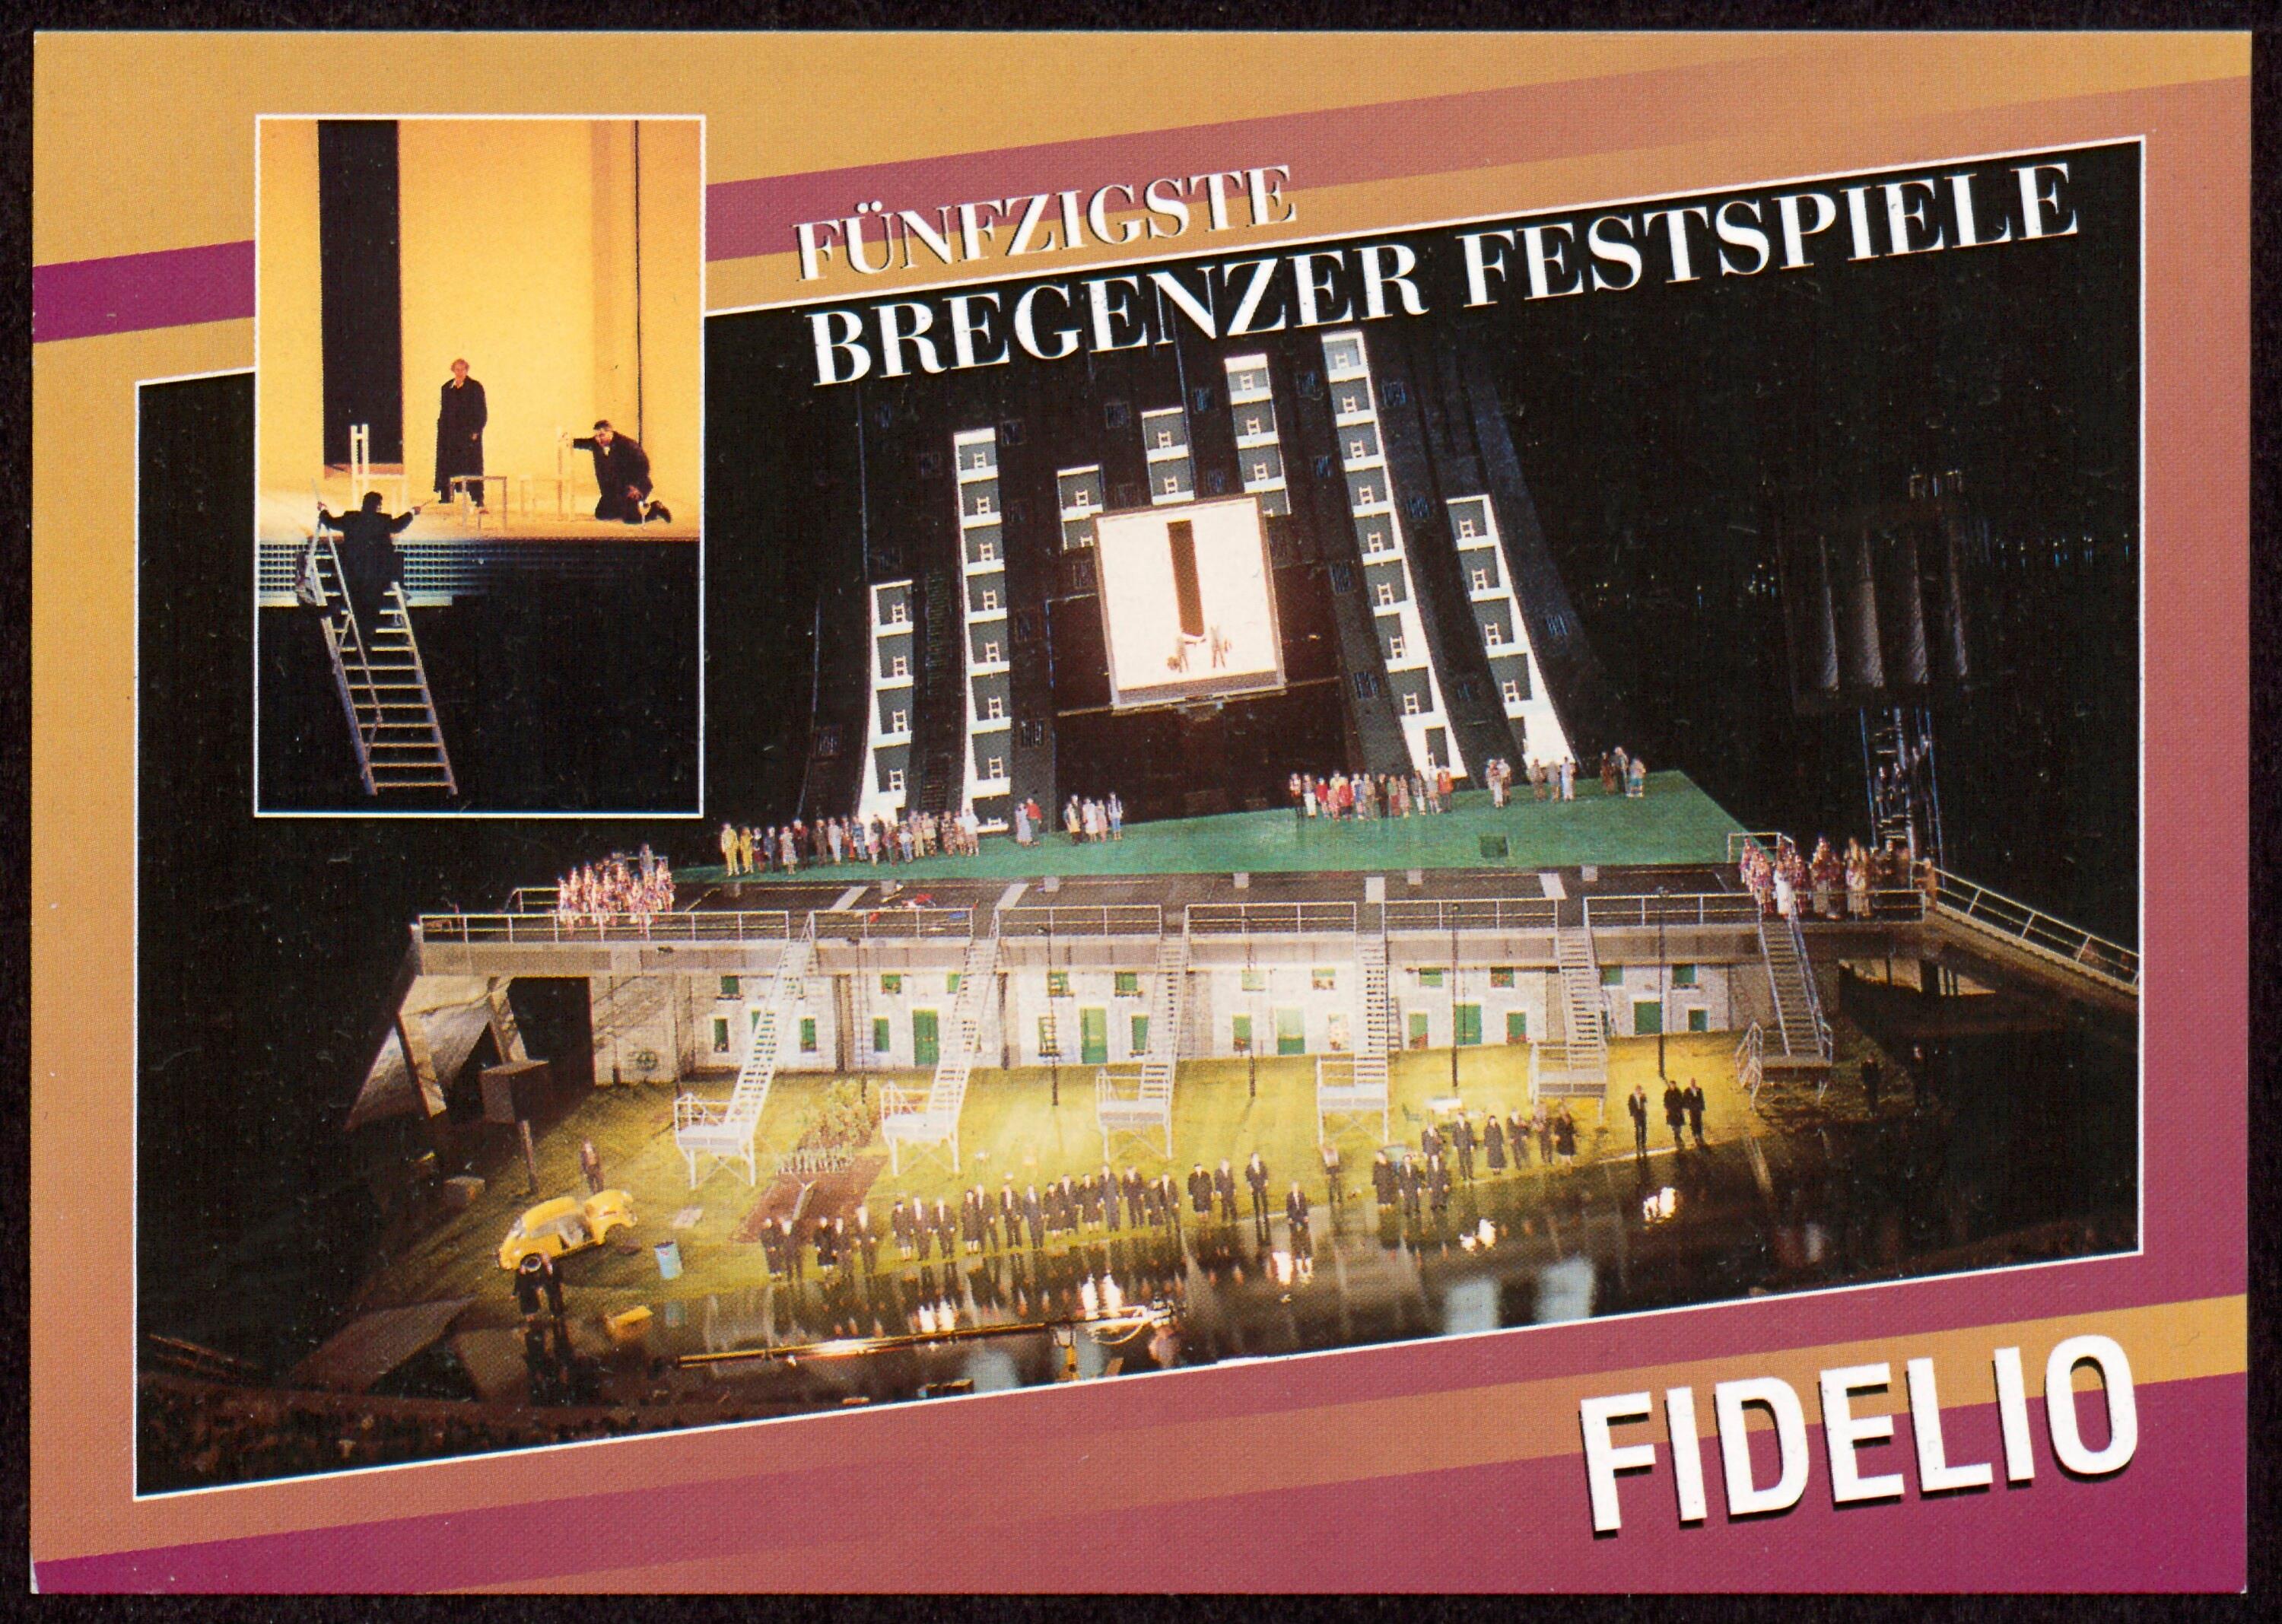 Fünfzigste Bregenzer Festspiele></div>


    <hr>
    <div class=